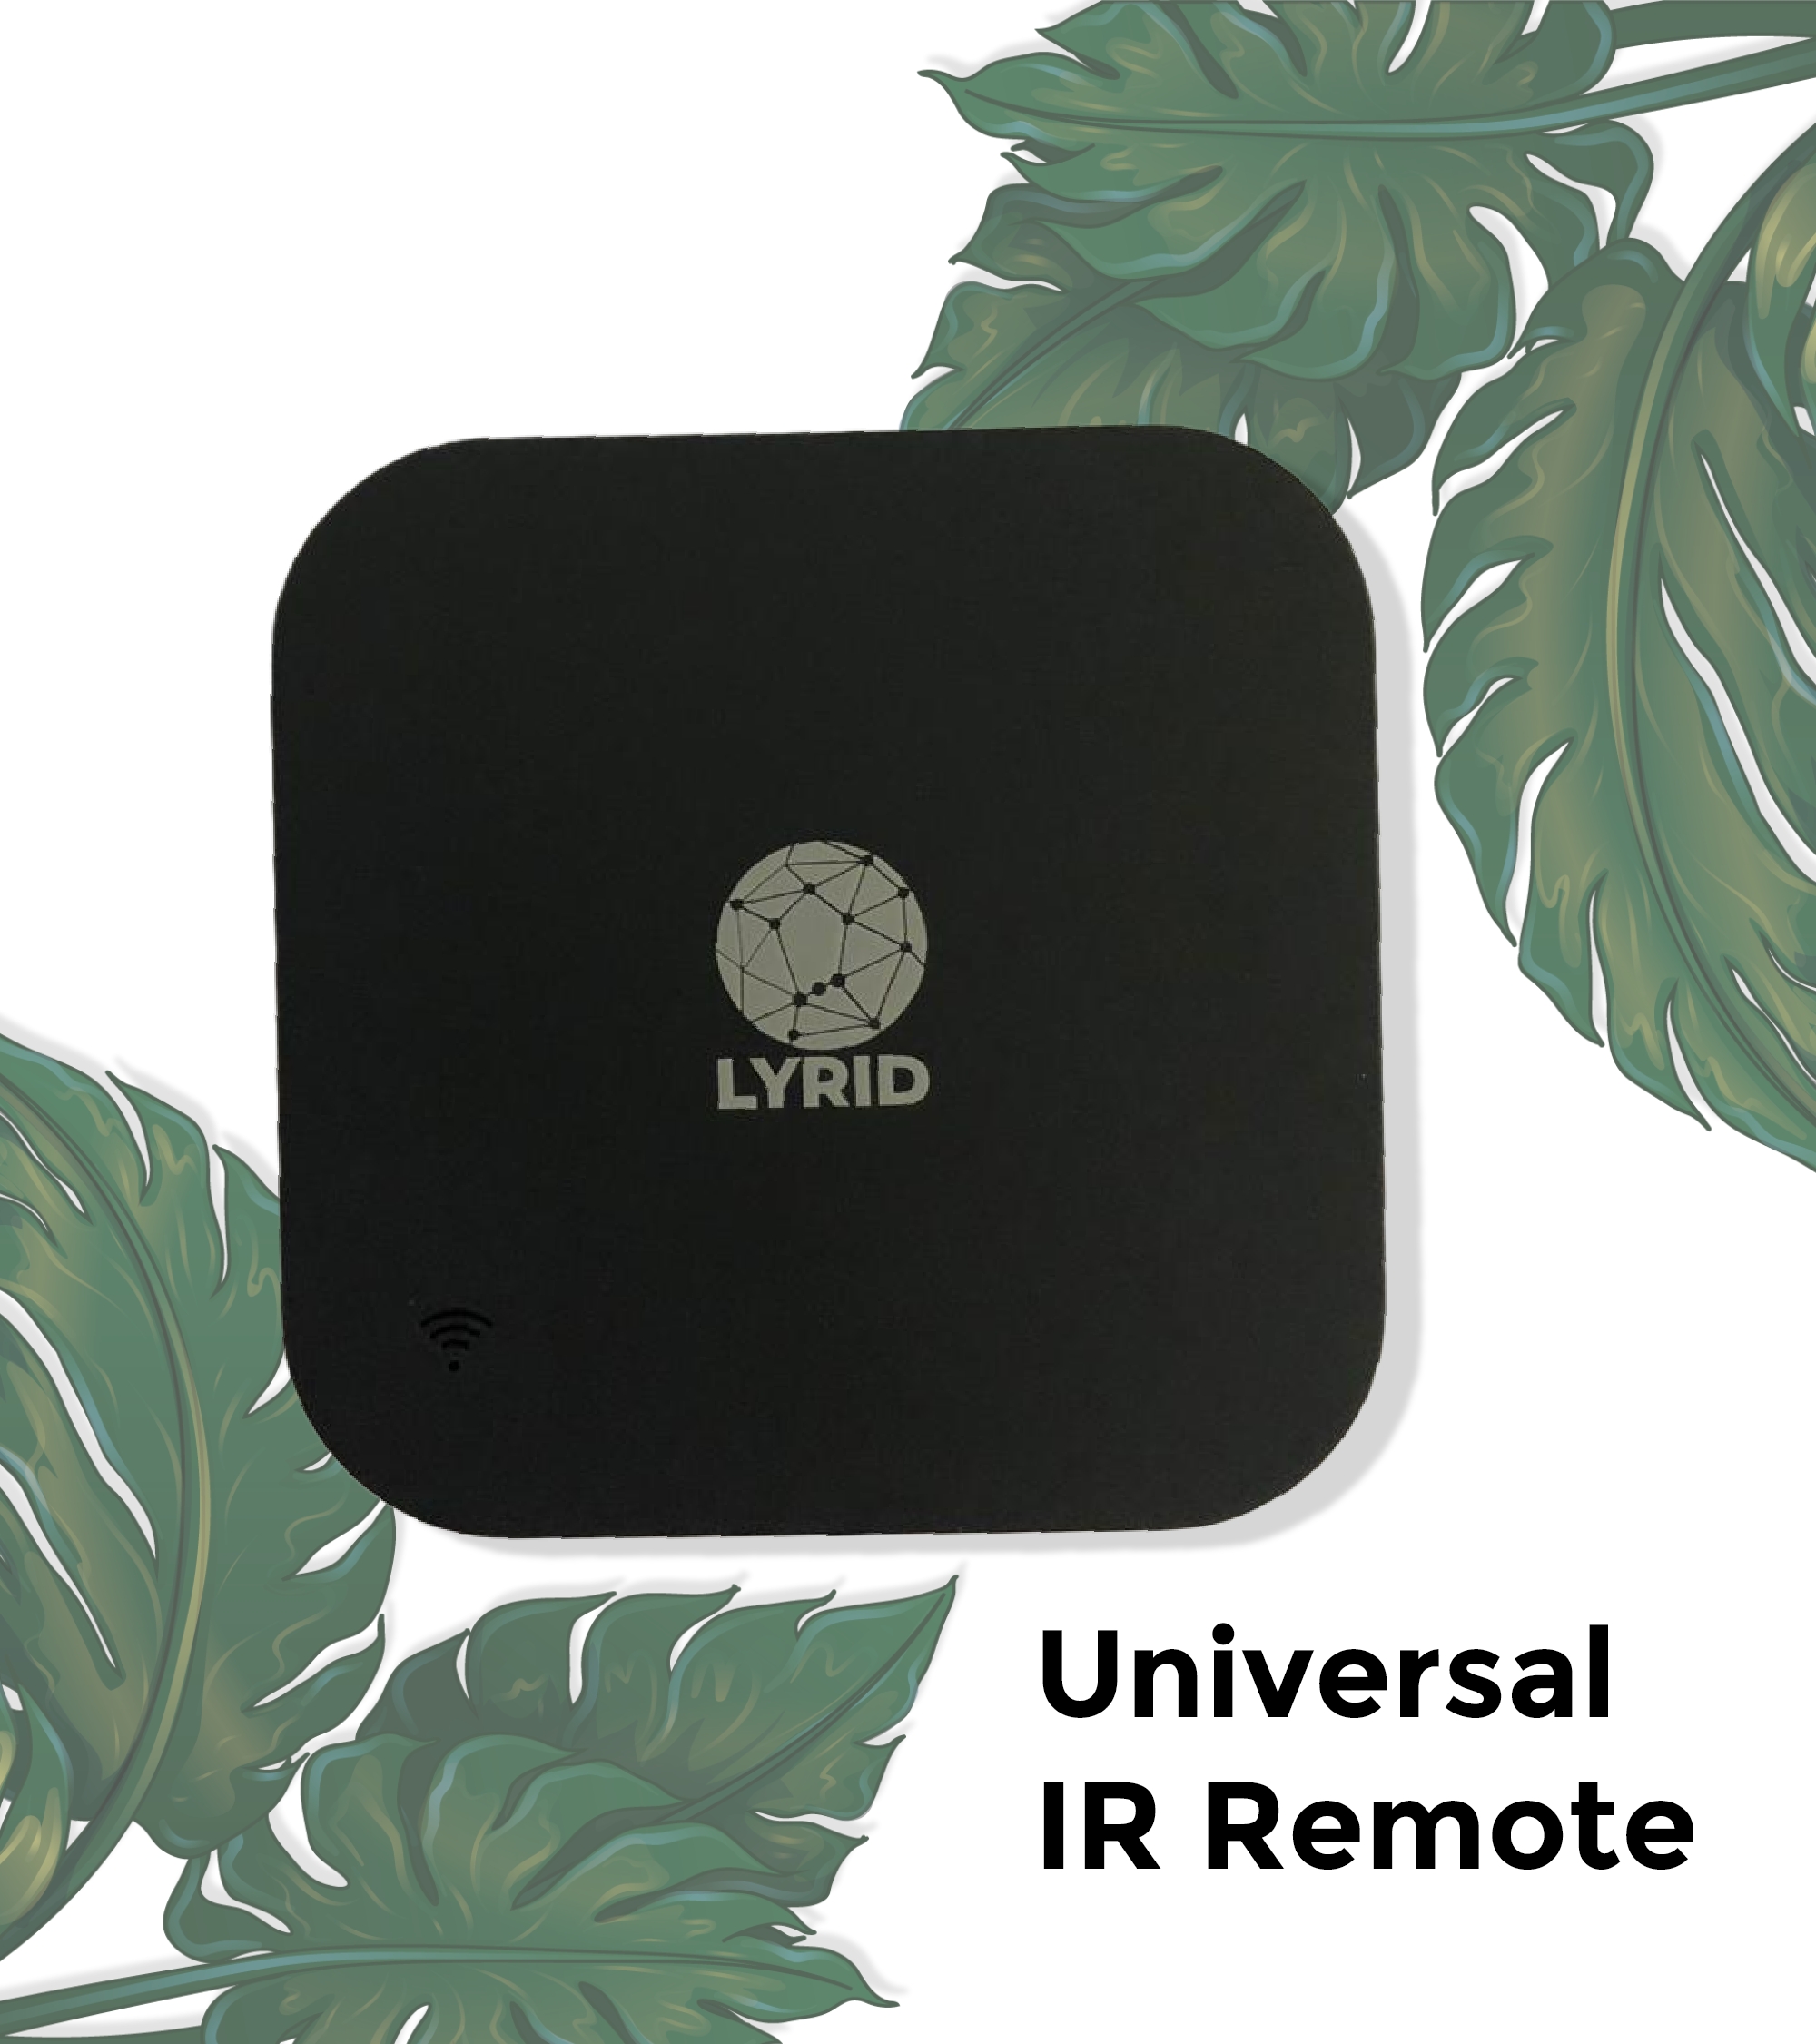 Universal IR Remote